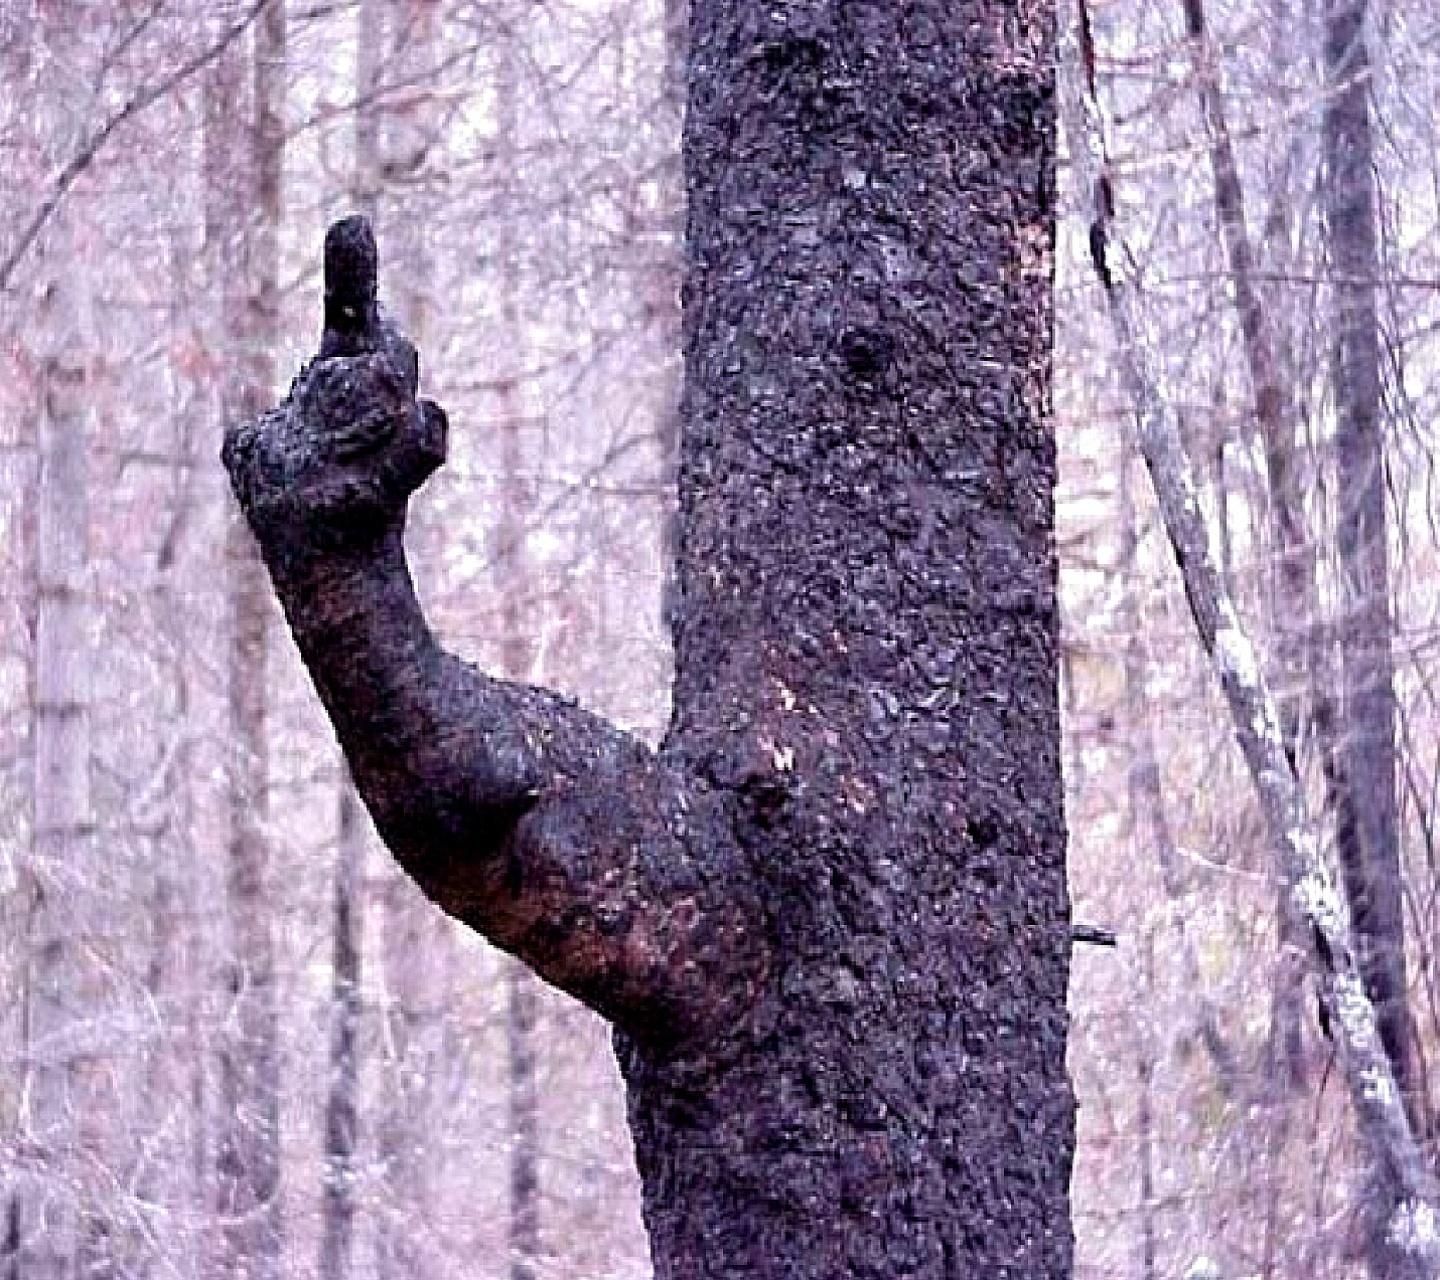 *** you too, tree!